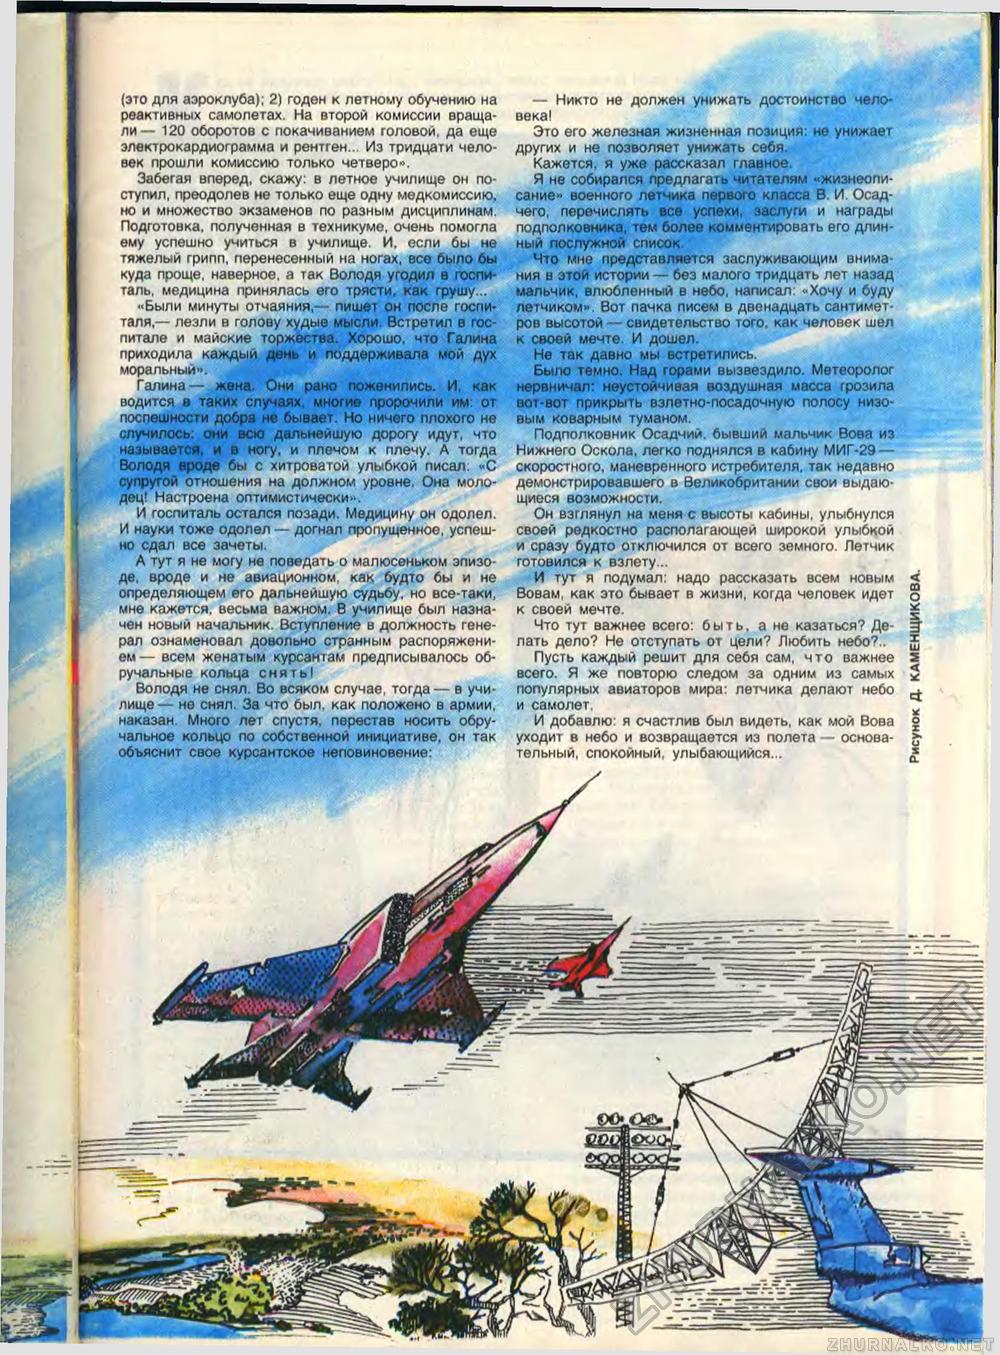 Пионер 1989-03, страница 41